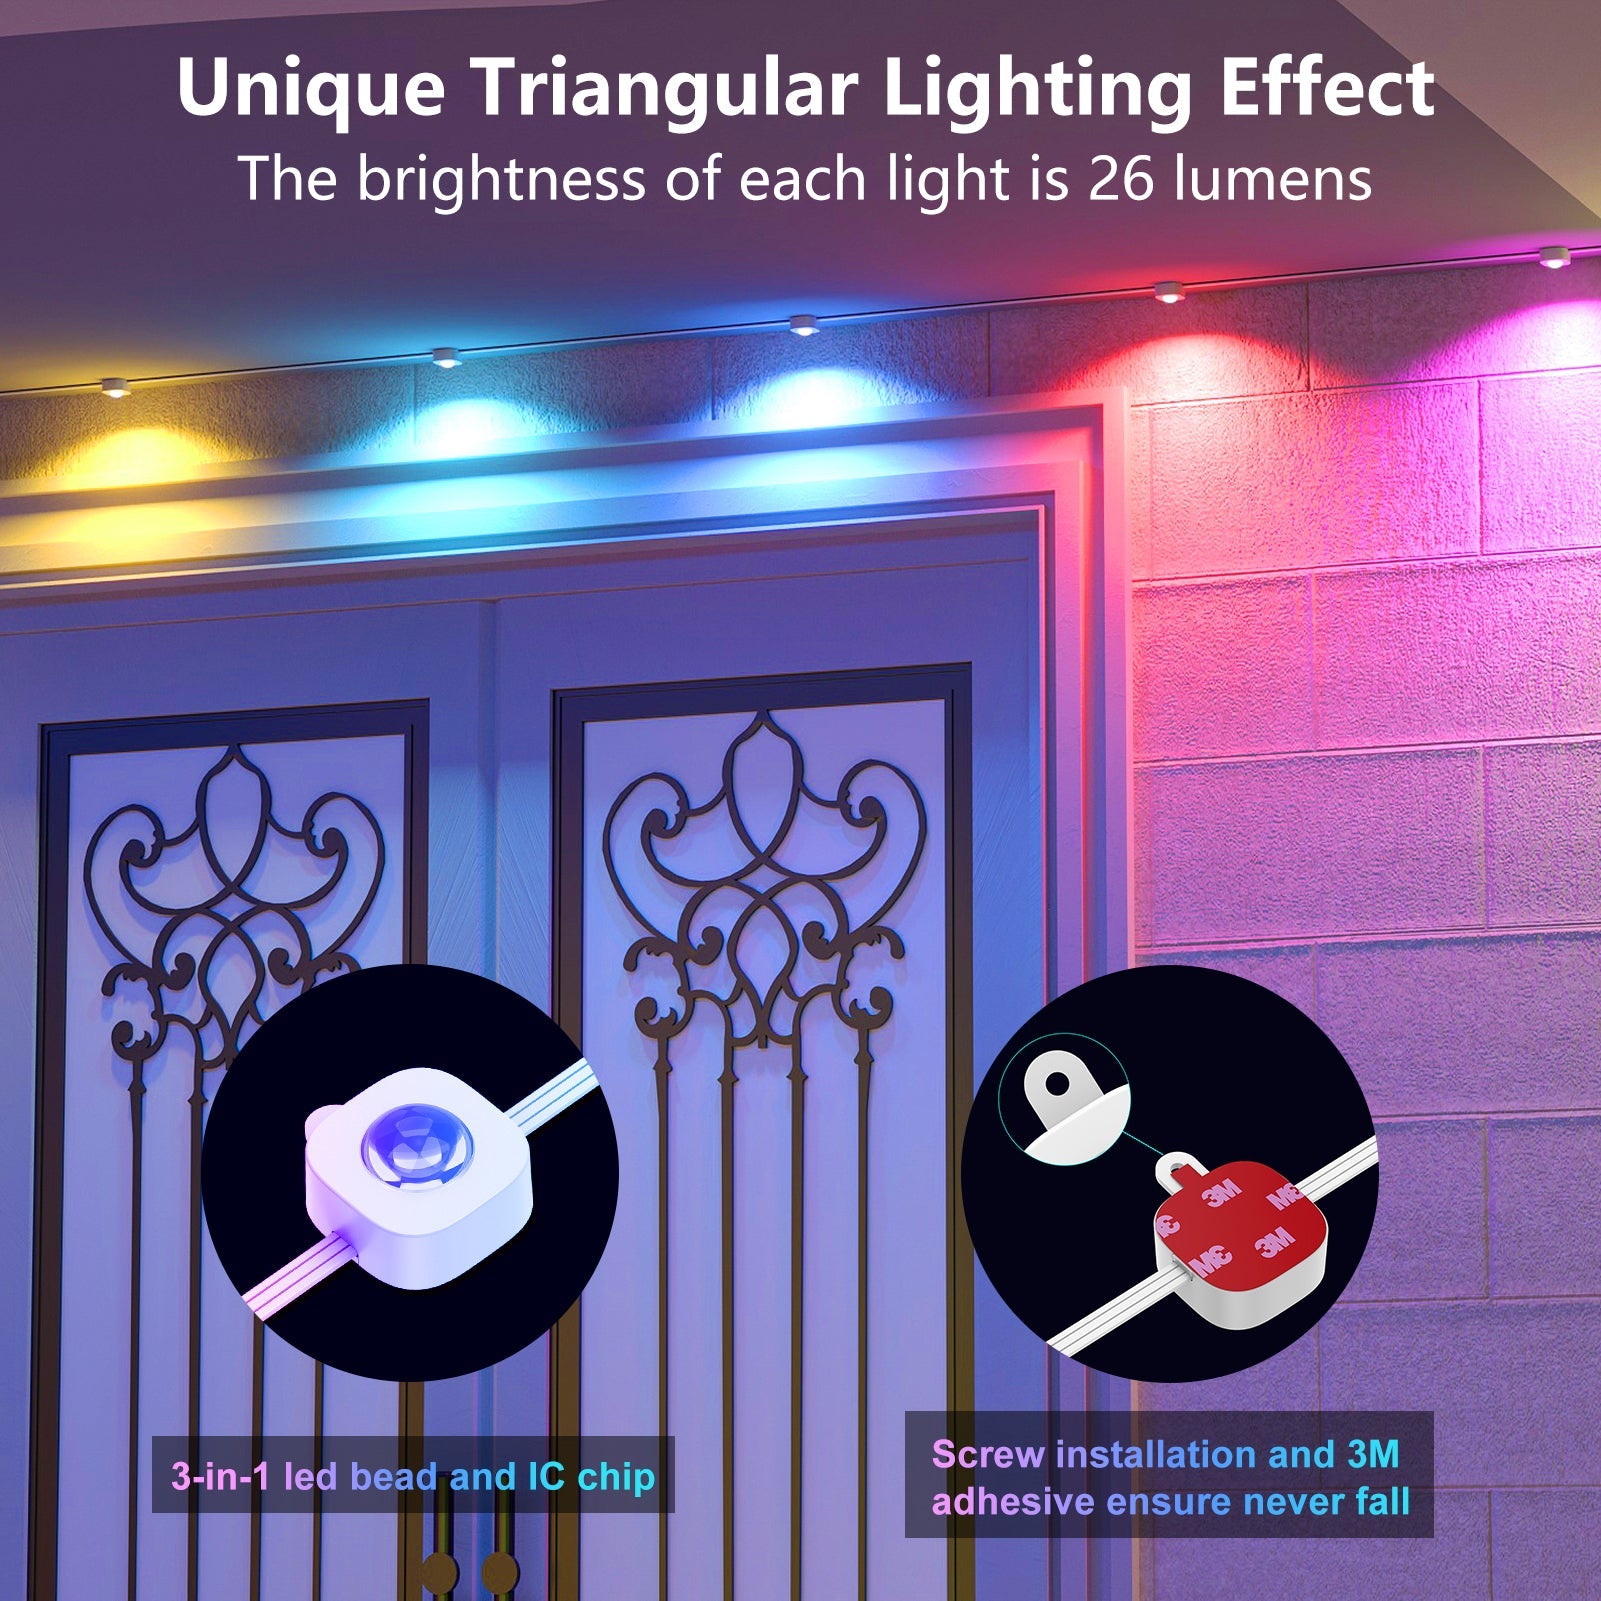 unique triangular lighting effect